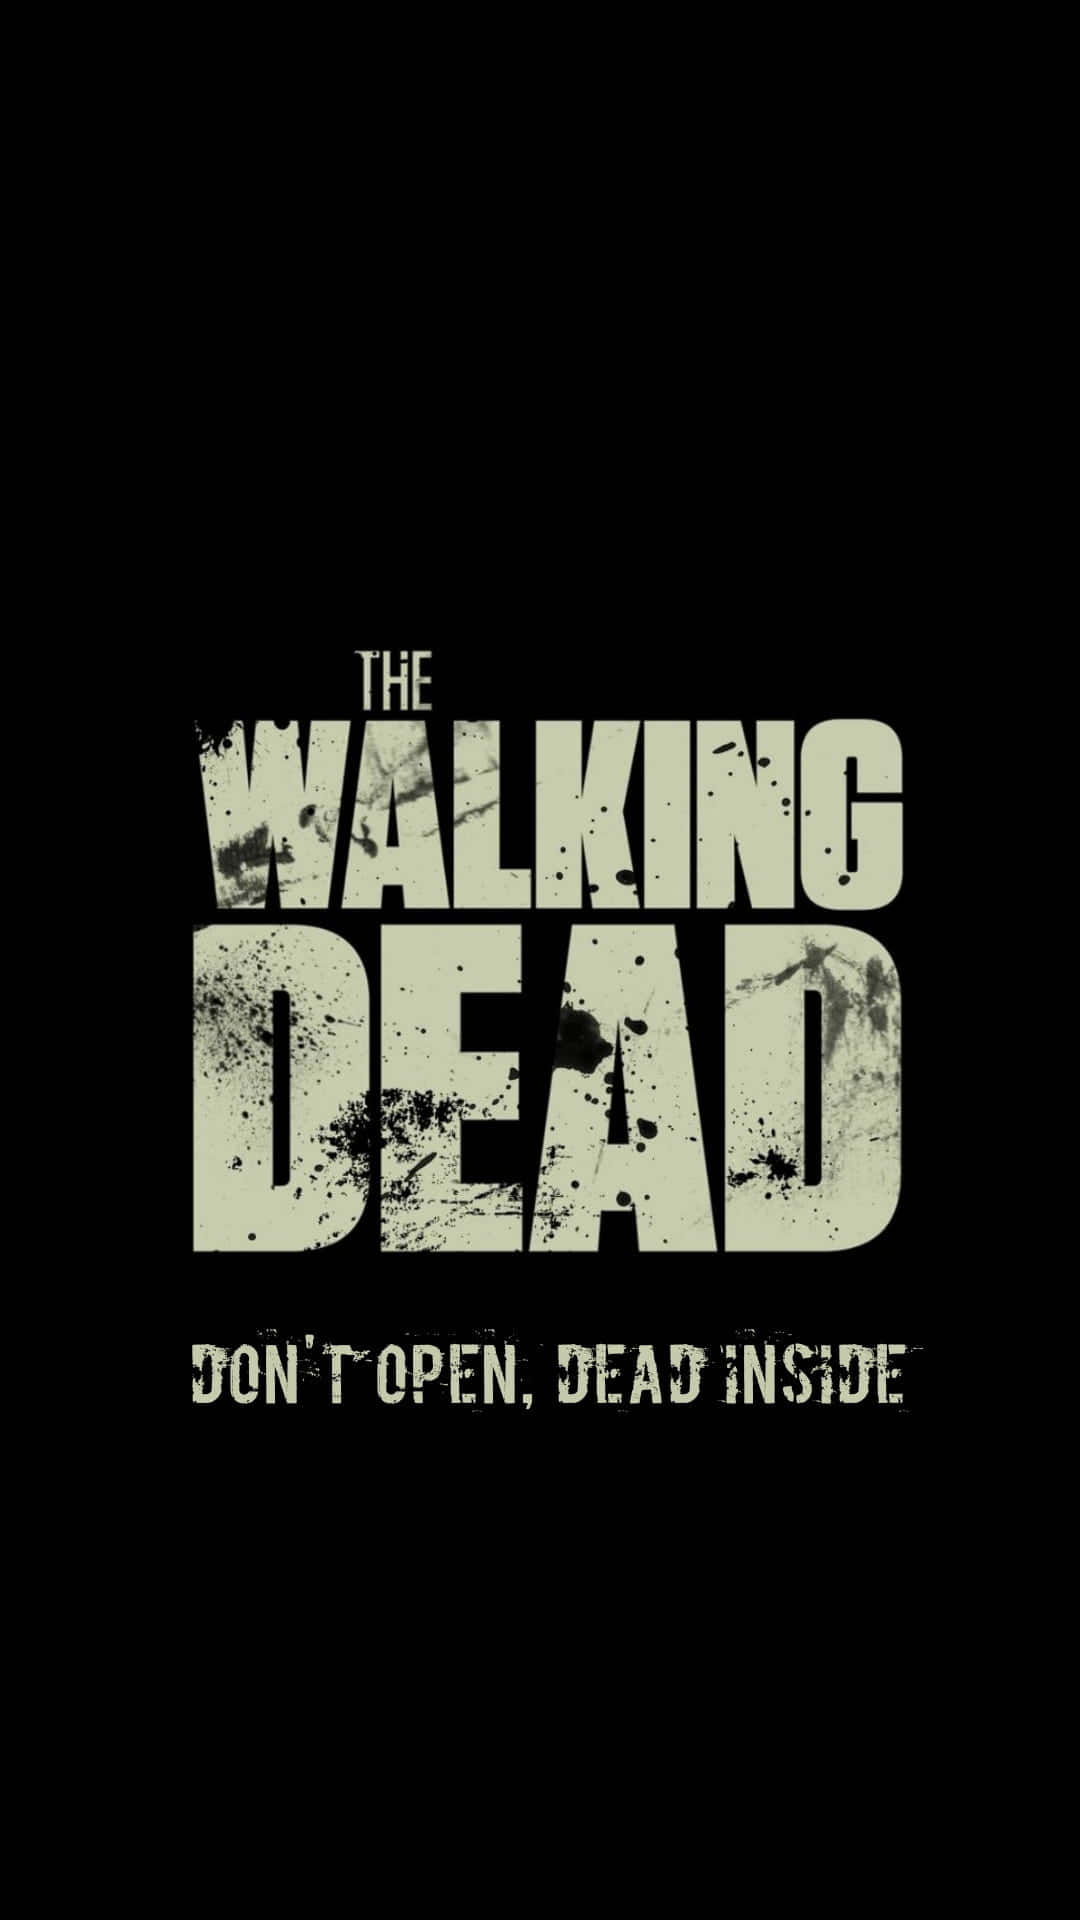 Oplev en post-apokalyptisk verden med The Walking Dead på din Iphone. Wallpaper